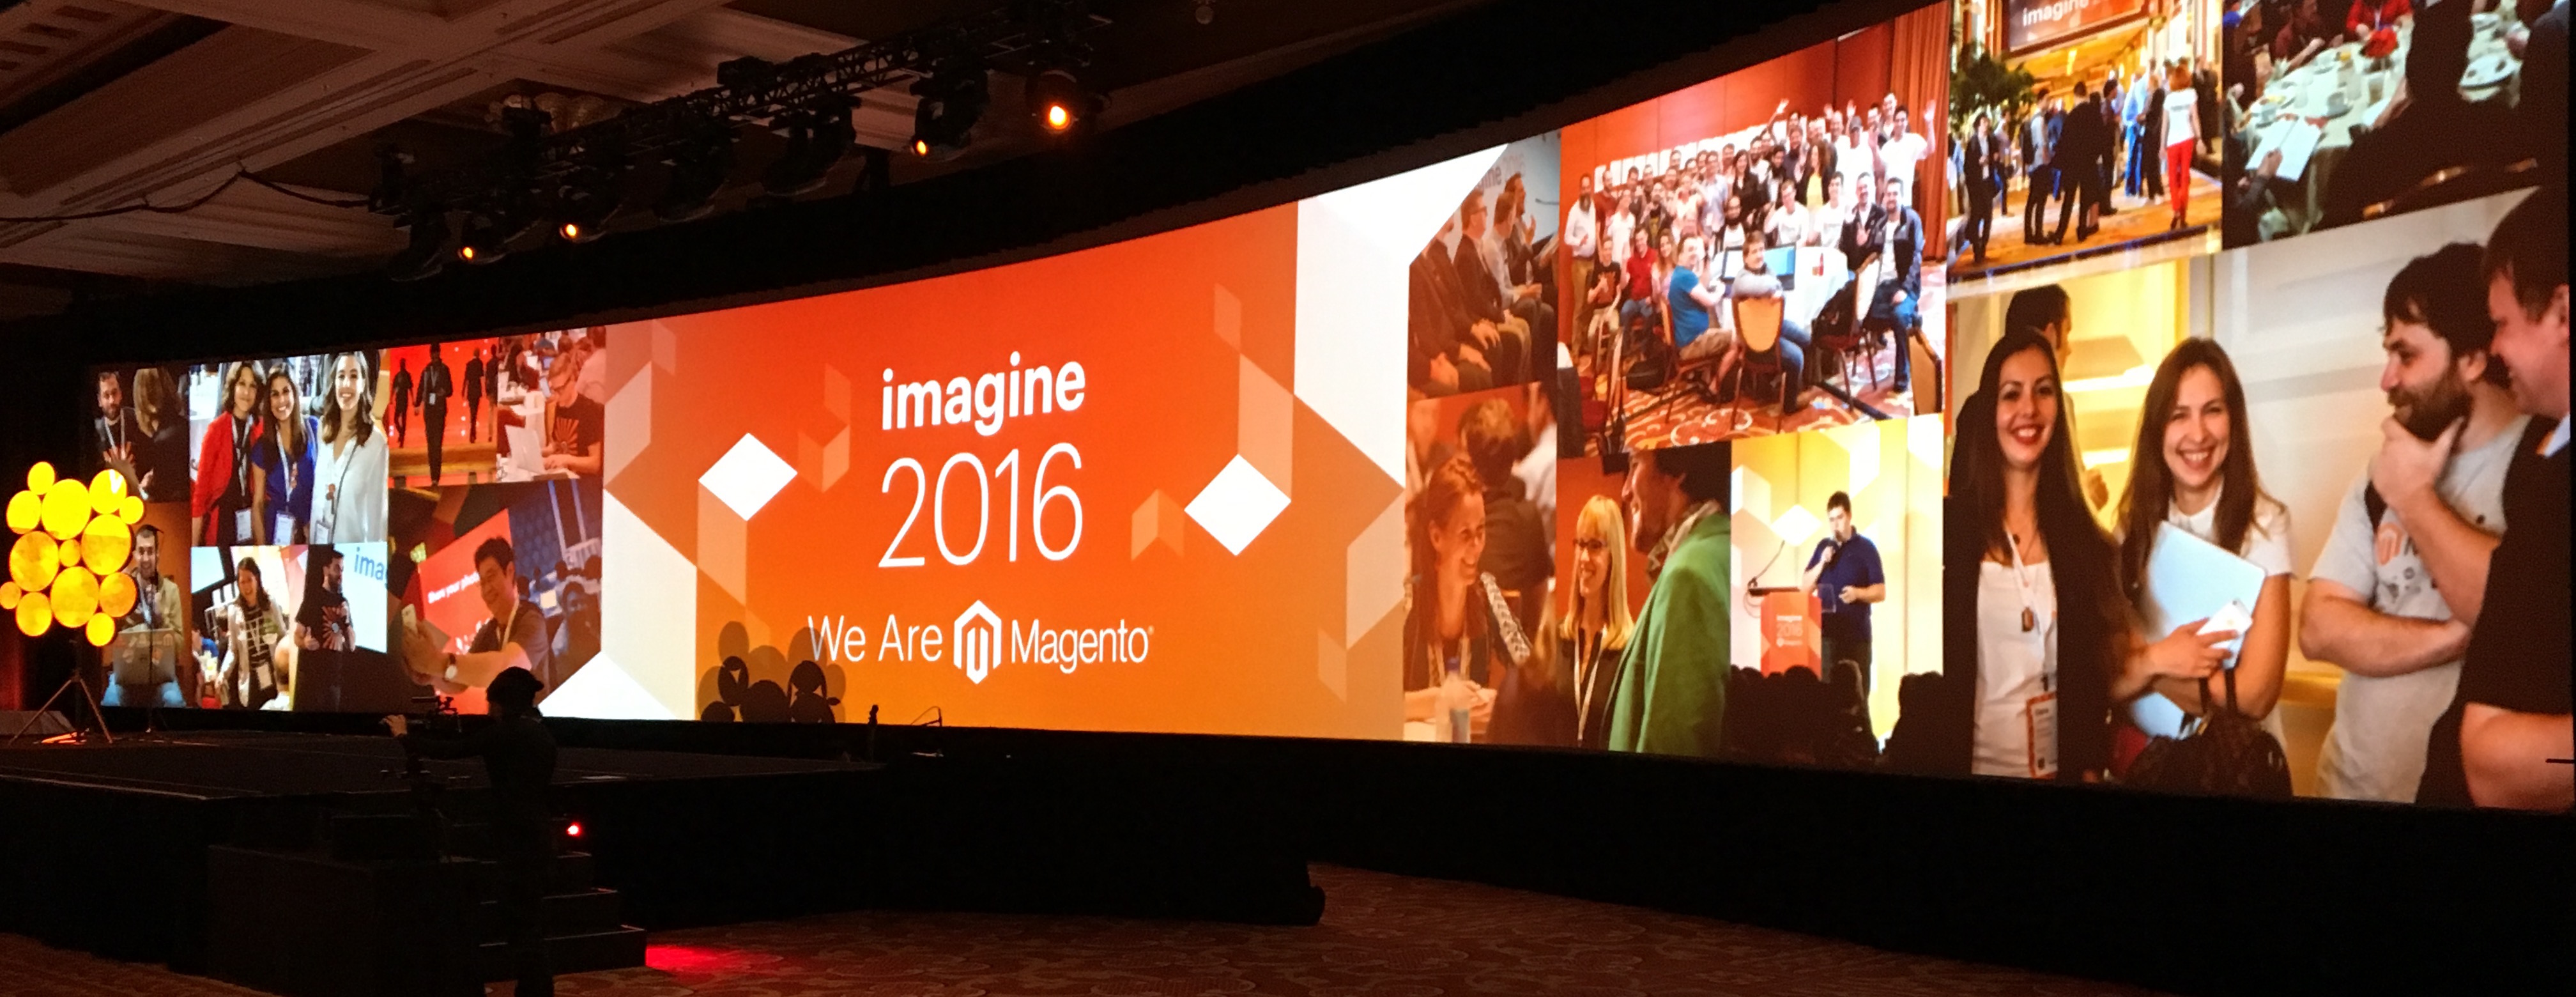 madiaecommerce: @magento  #ImagineCommerce 2016 is begonnen. De 1e highlights waaronder een cloud oplossing voor Magento enterprise https://t.co/EsfQKUZCJA